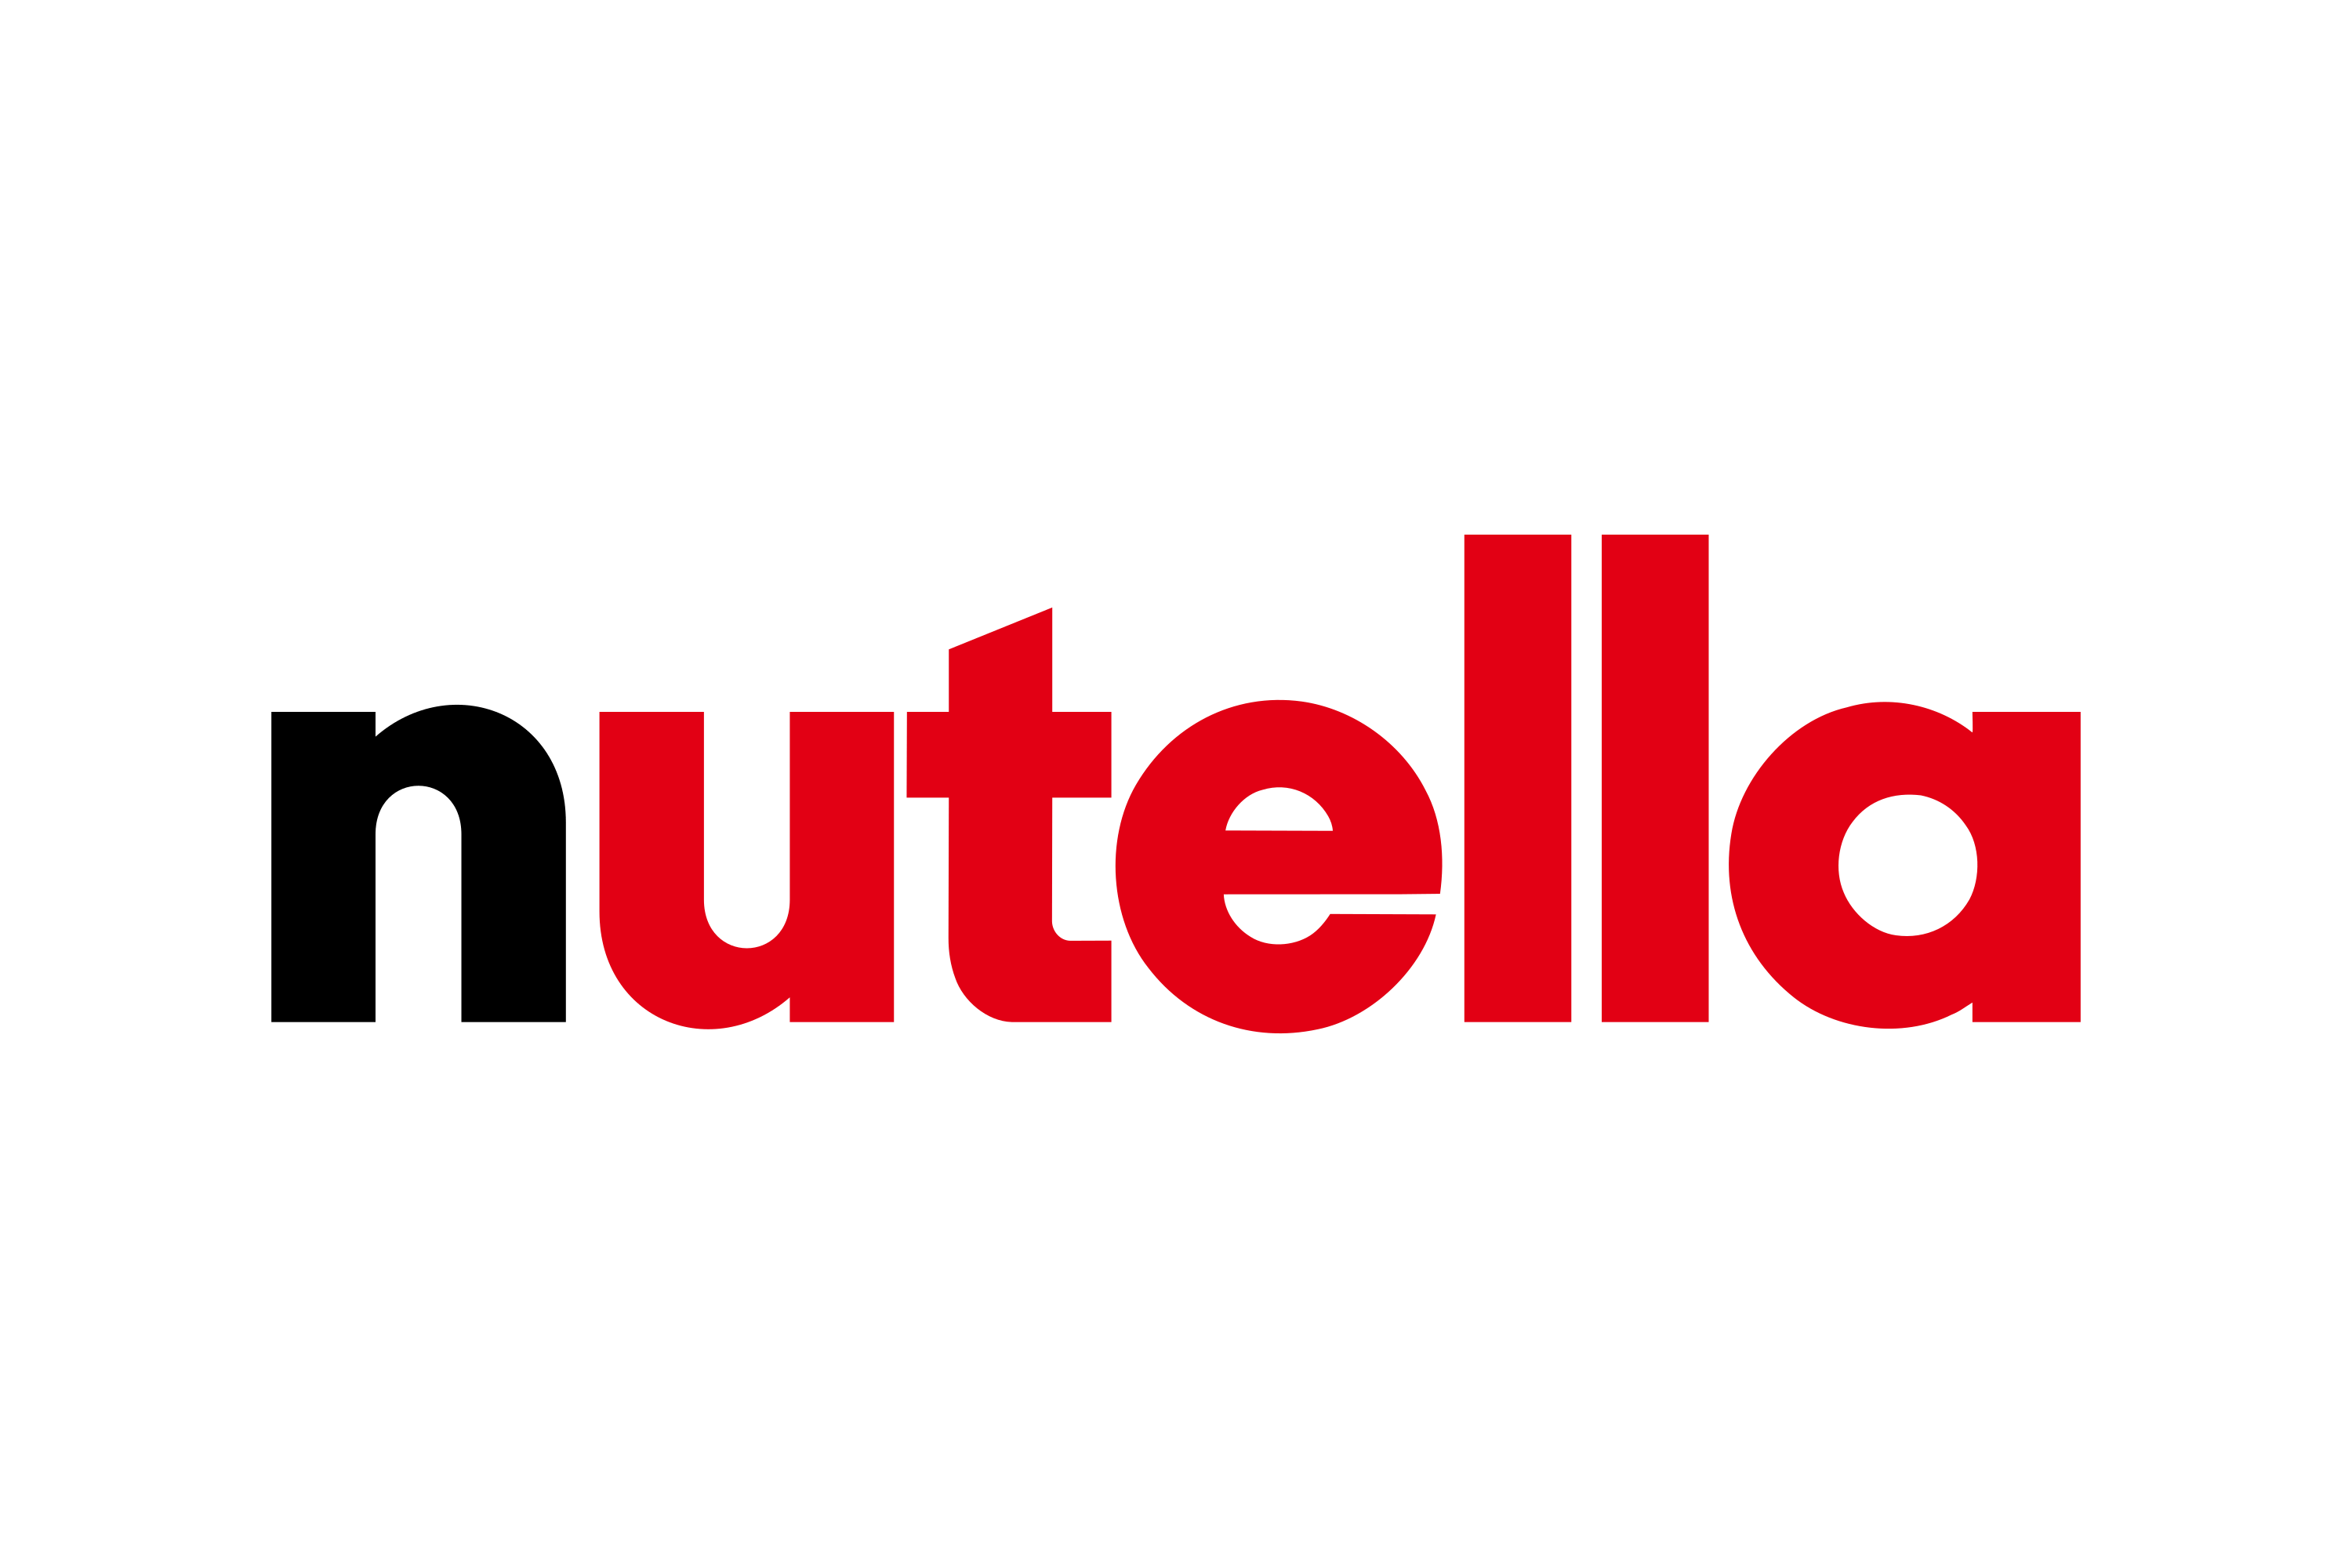 Download Nutella Logo in SVG Vector or PNG File Format - Logo.wine